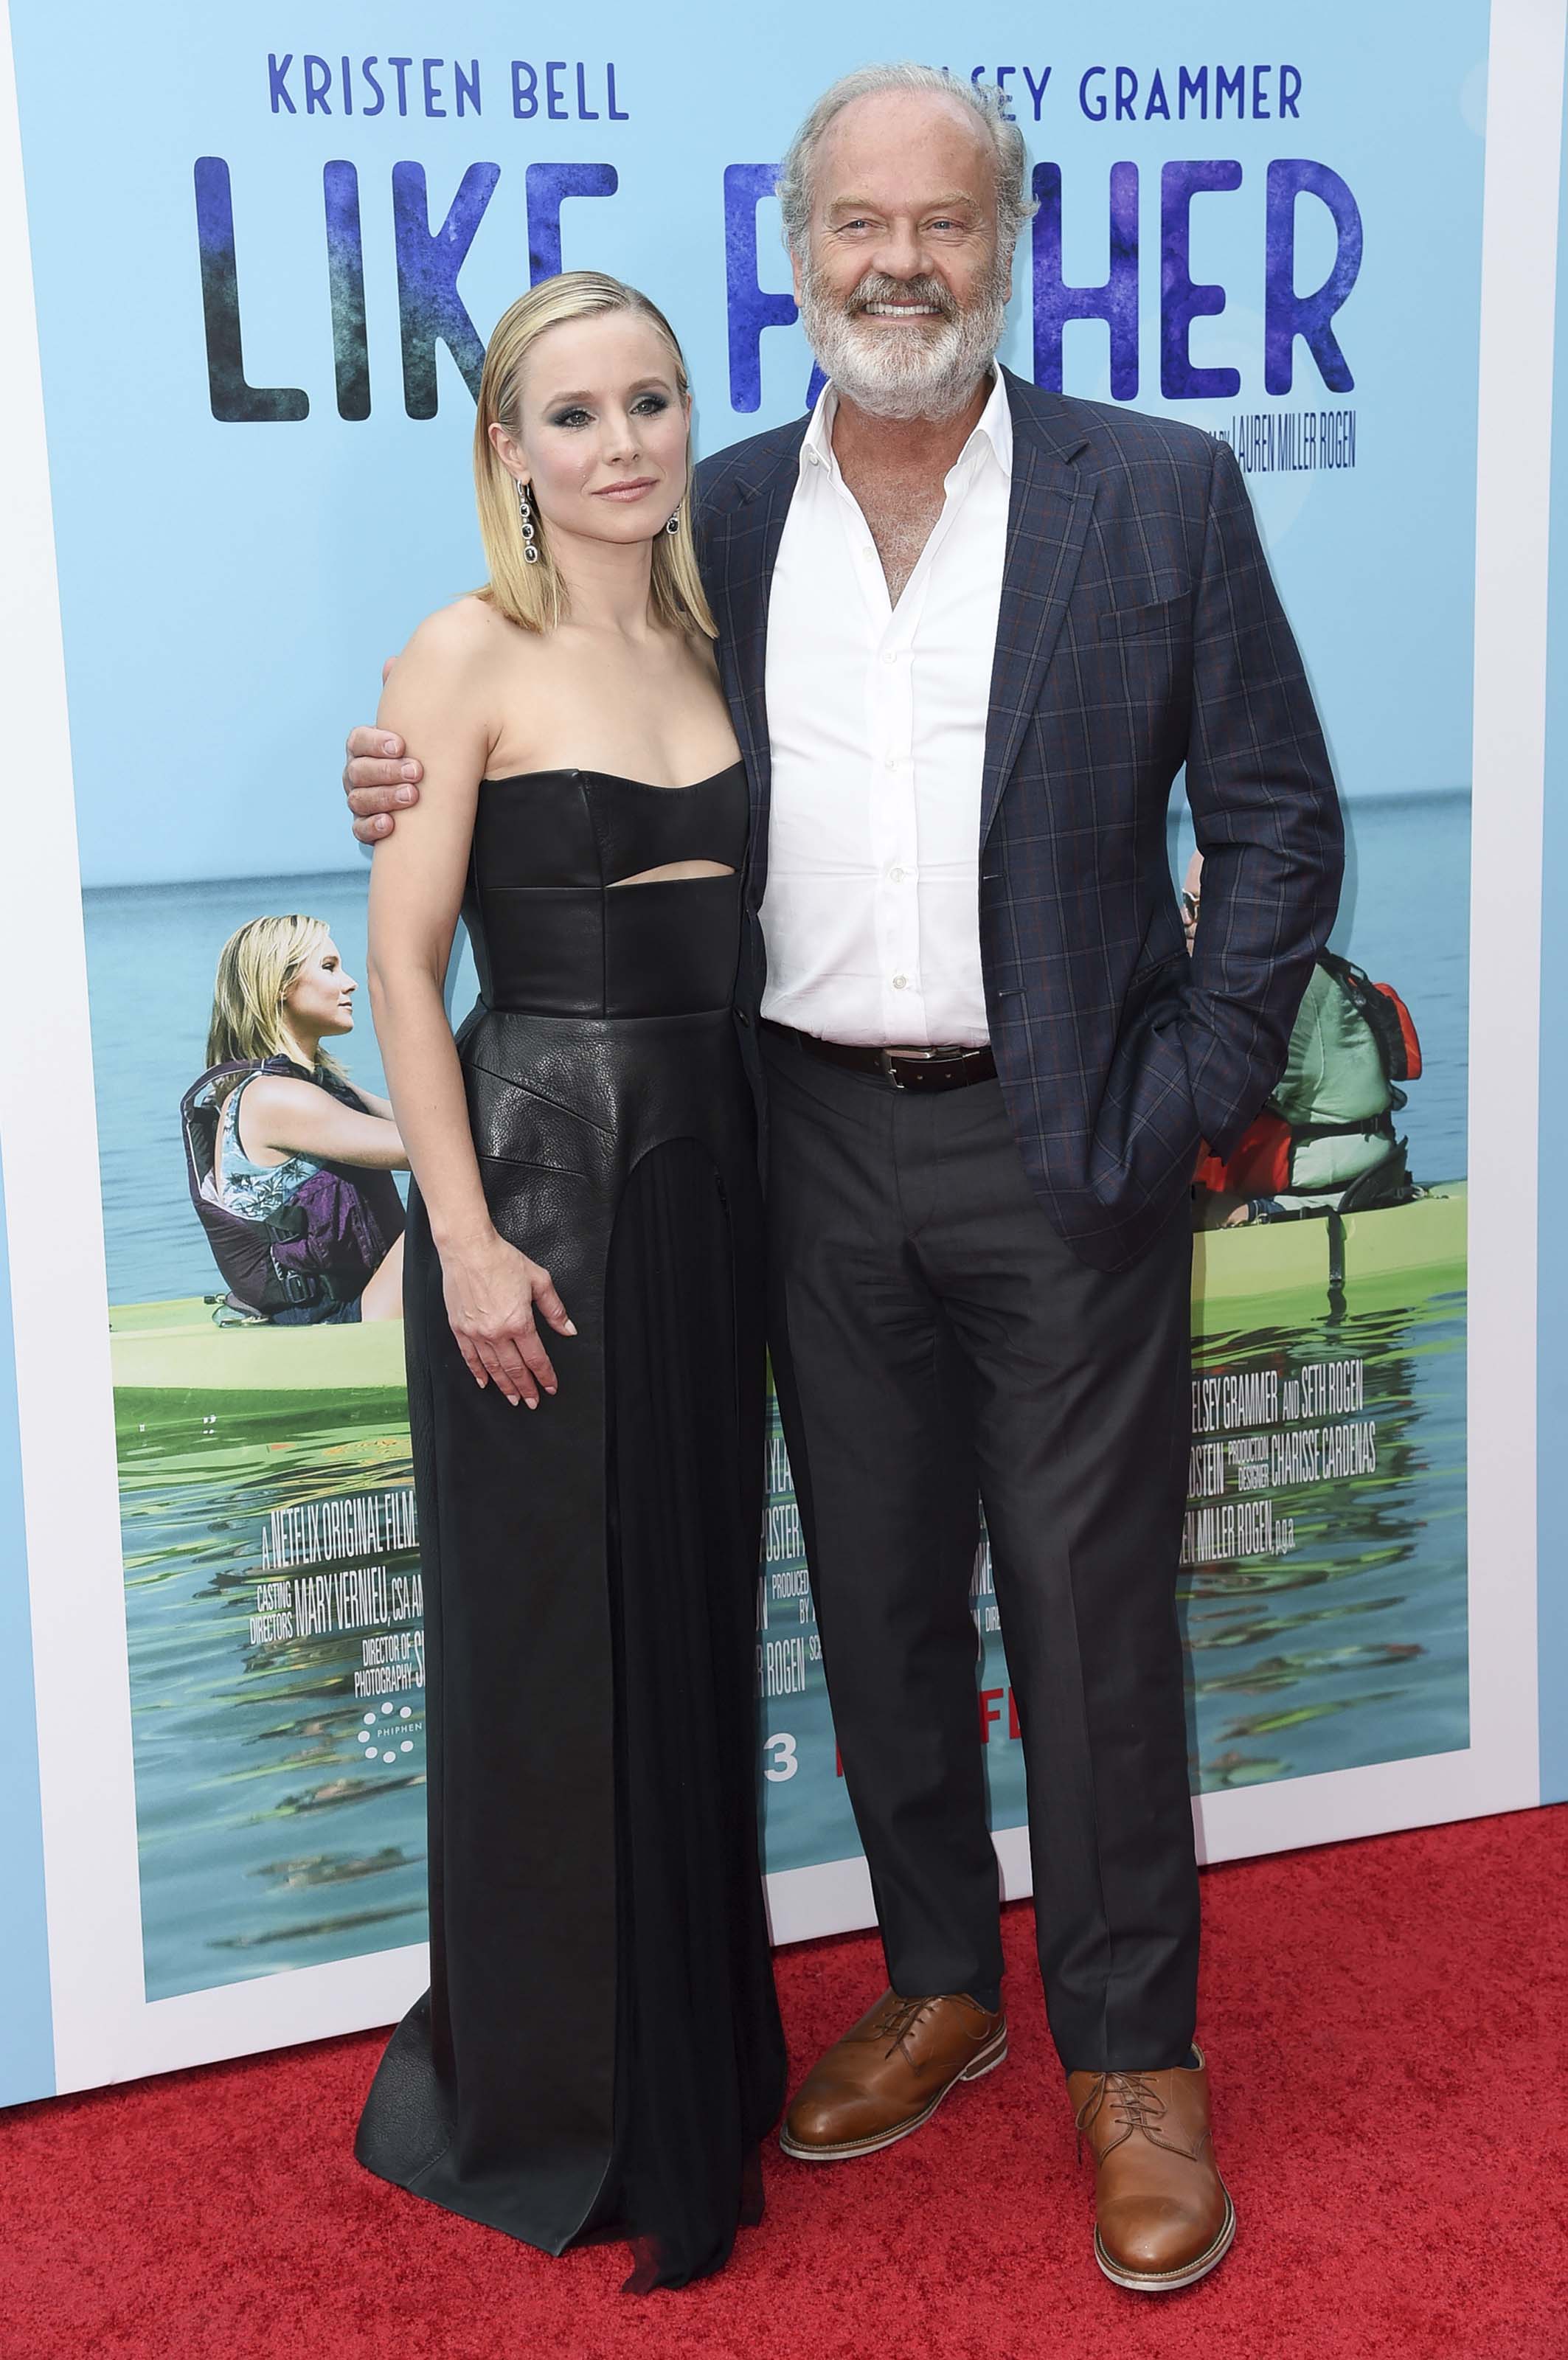 Kristen Bell attends Like Father film premiere